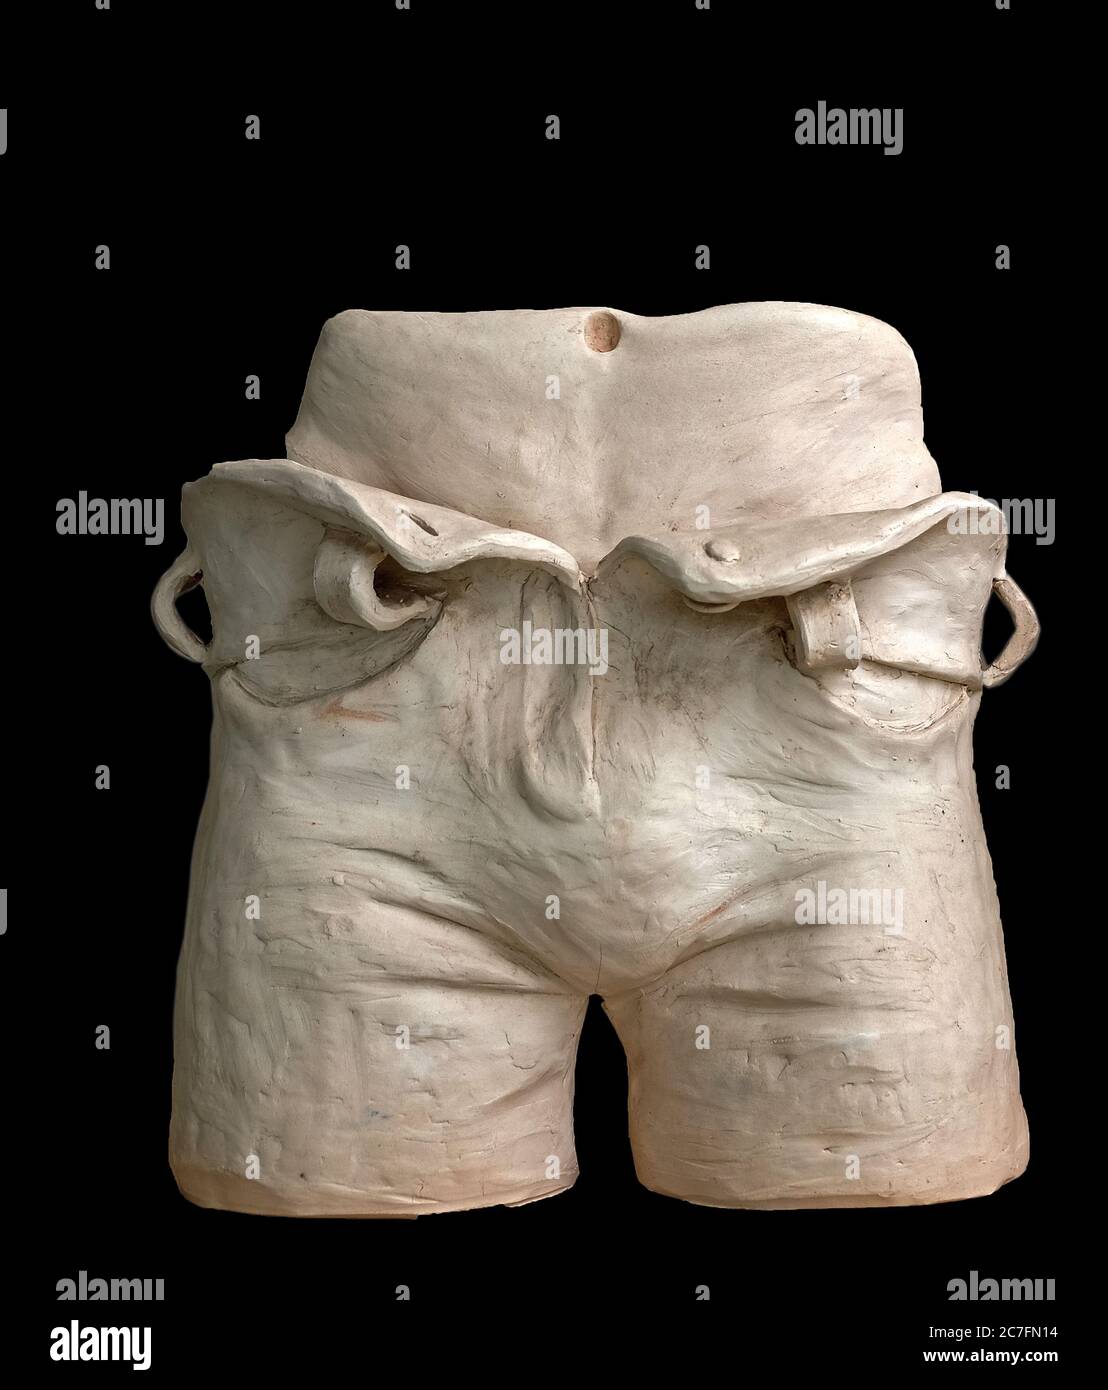 Imagen escultórica de la parte central del cuerpo humano desde el cinturón hasta las rodillas en pantalones desabrochados Foto de stock